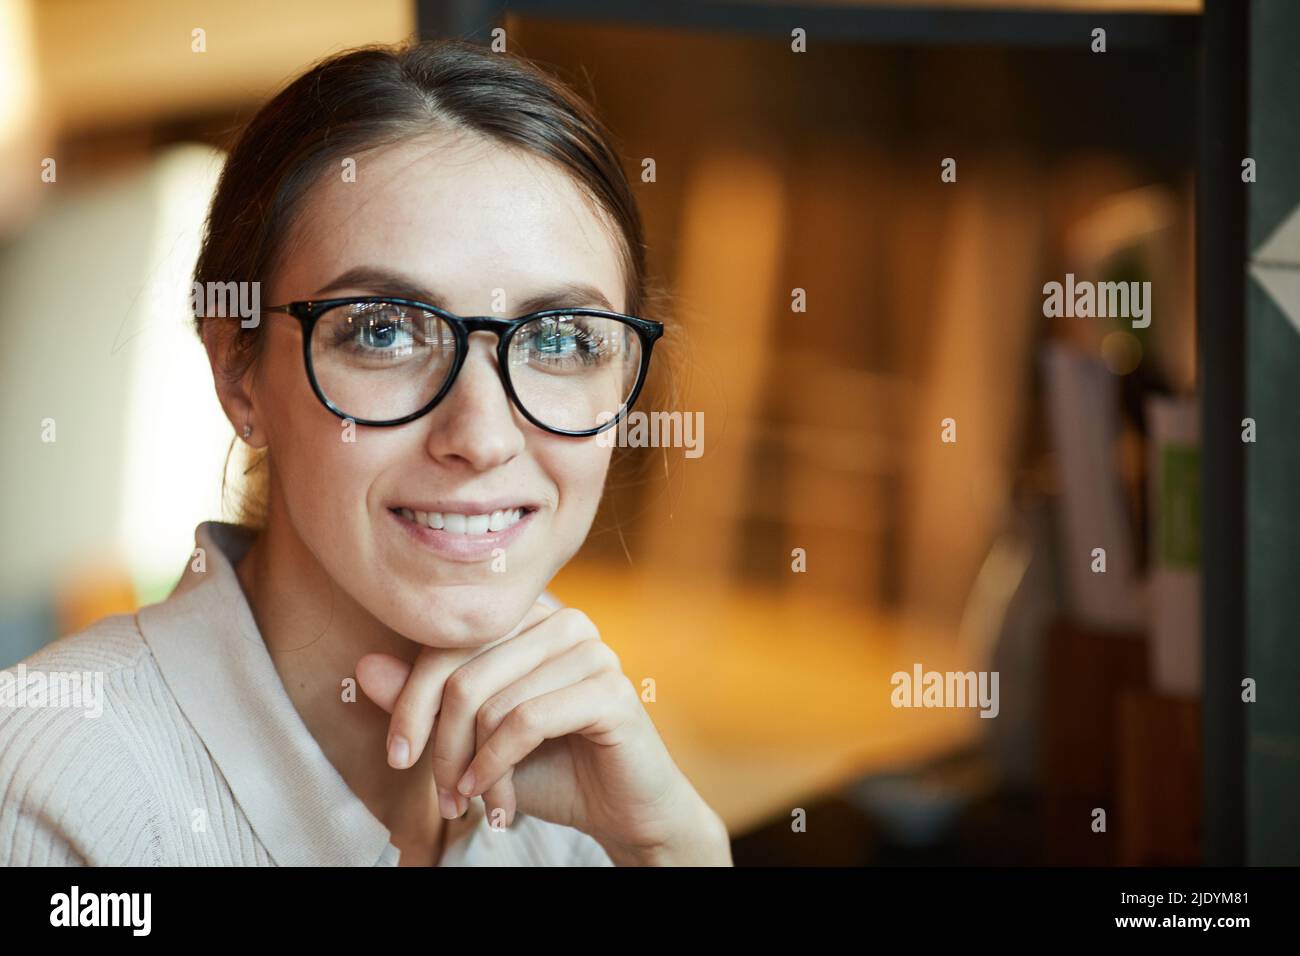 Bella donna giovane positiva con sorriso gentile indossando occhiali eleganti testa appoggiata a mano e guardando la macchina fotografica Foto Stock